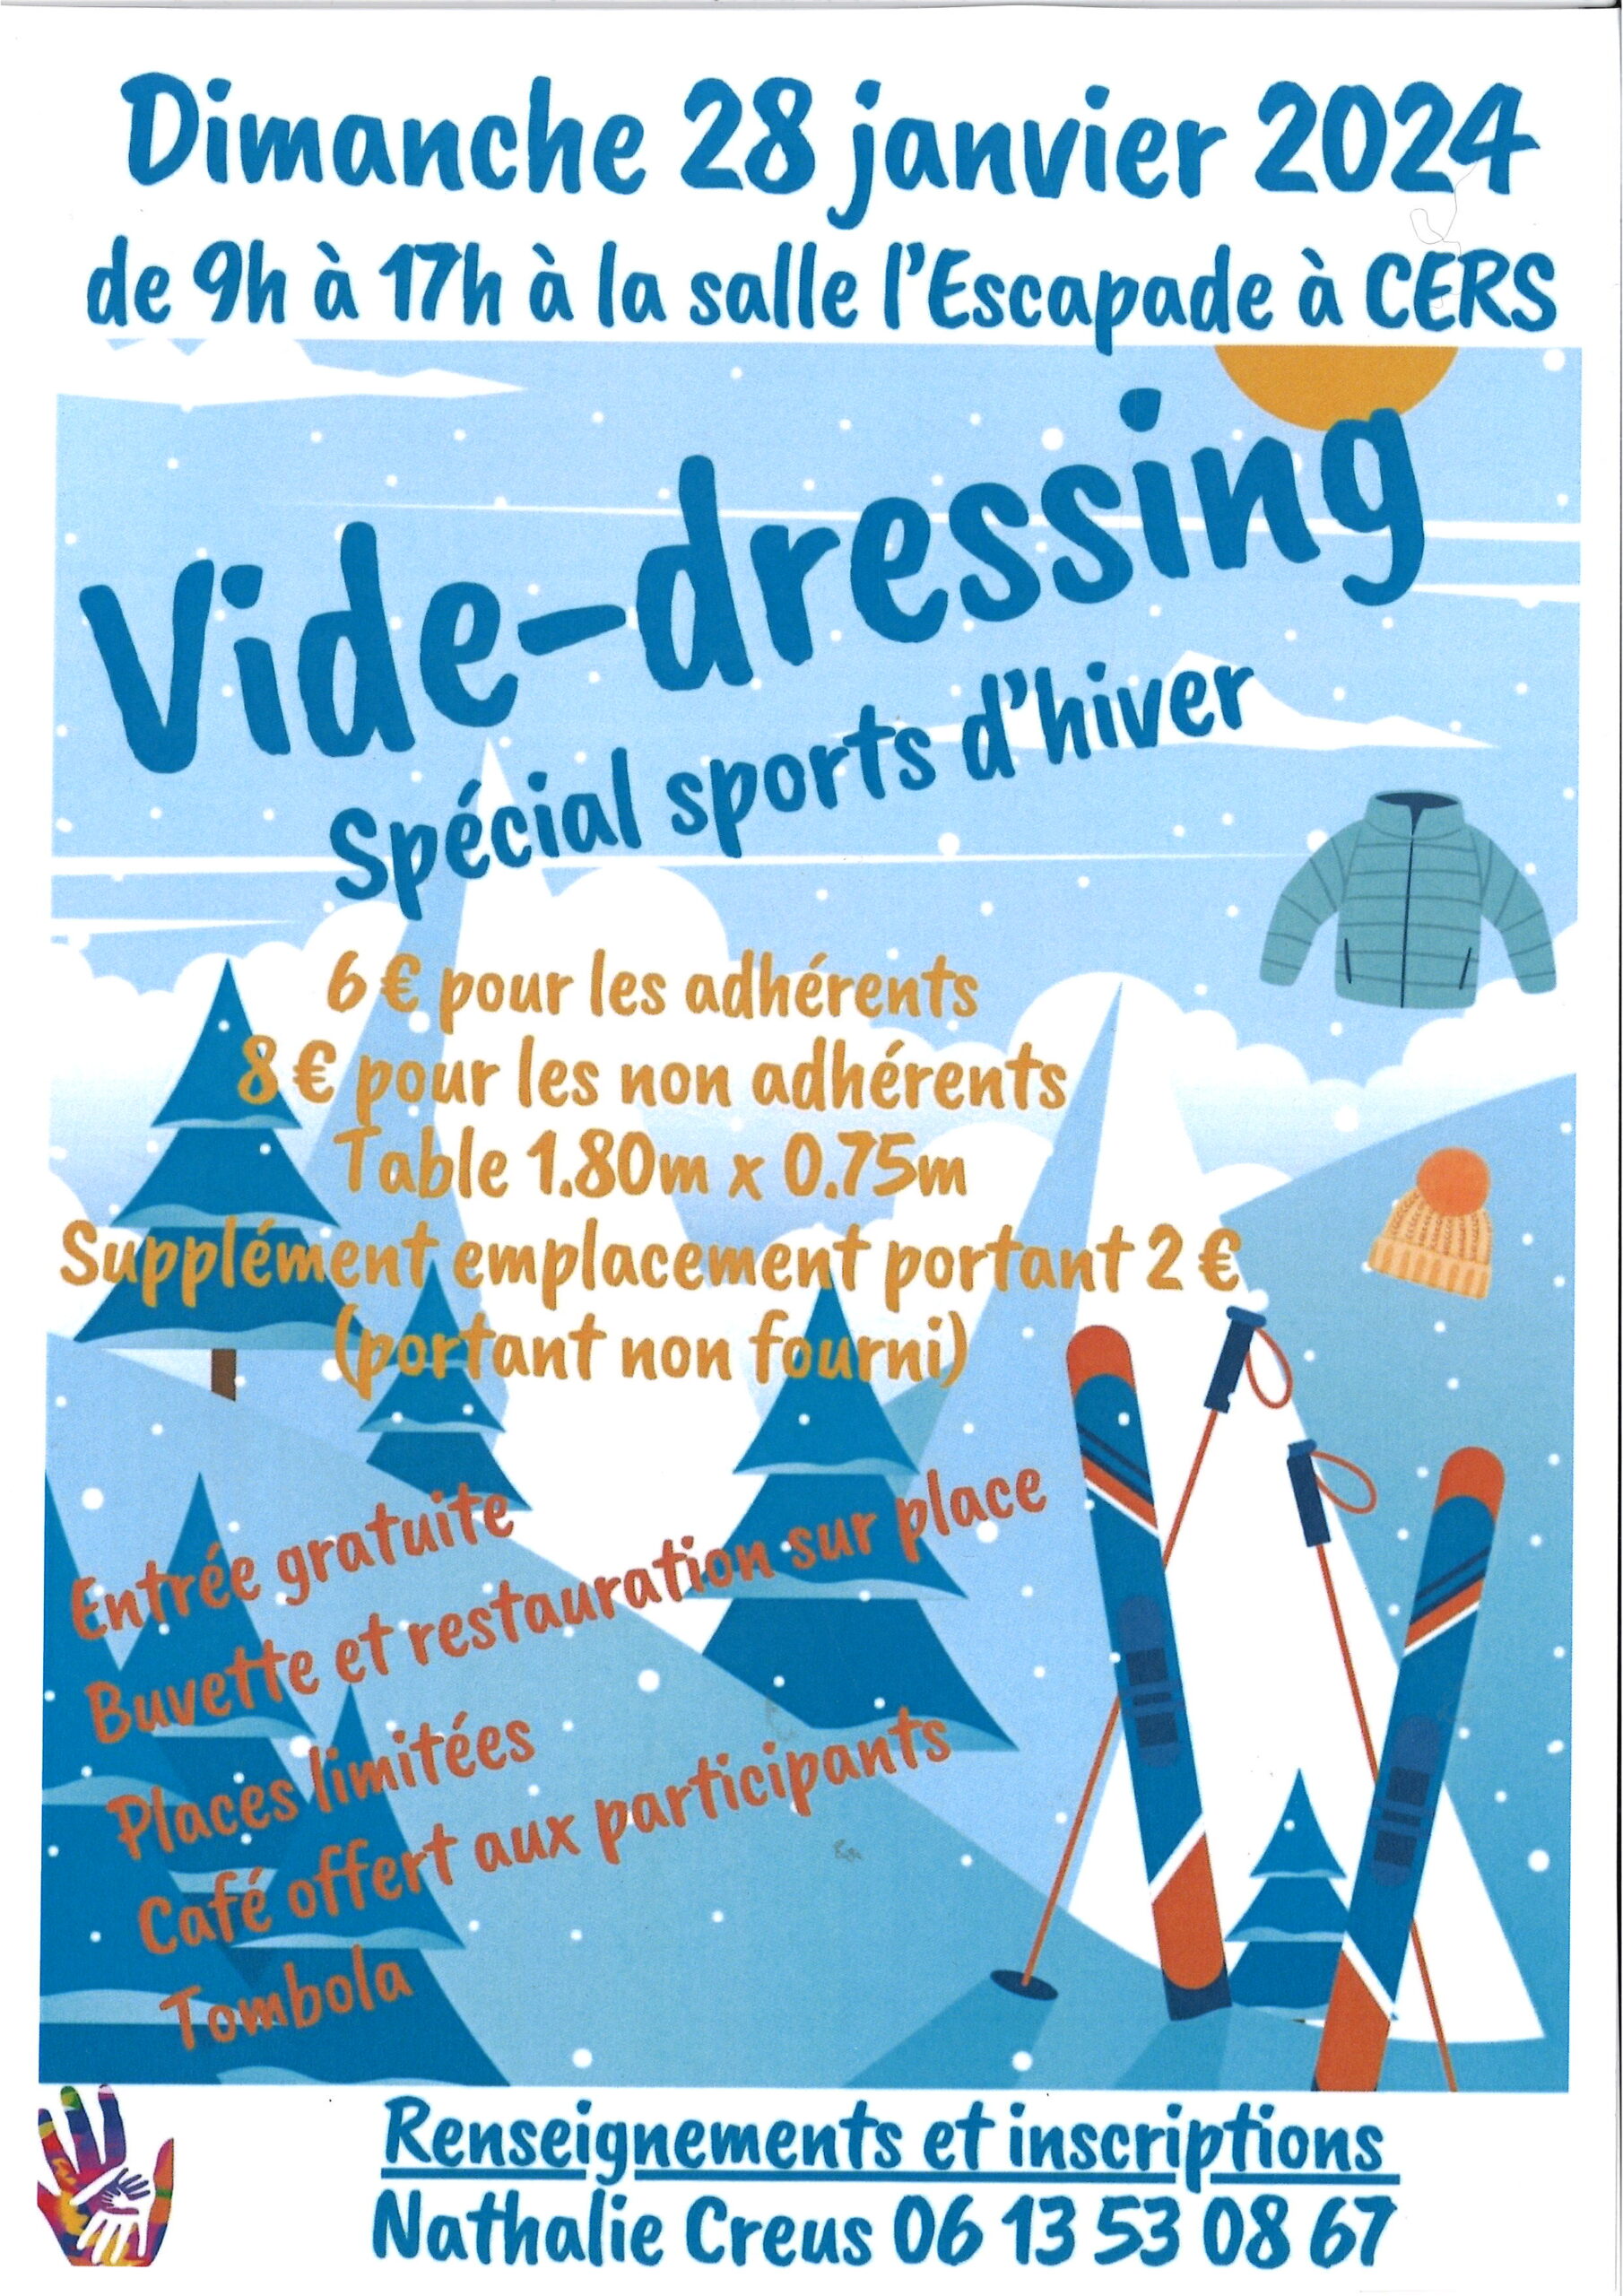 Lire la suite à propos de l’article VIDE DRESSING spécial « Sports d’hiver » le 28/01/24 à l’Escapade